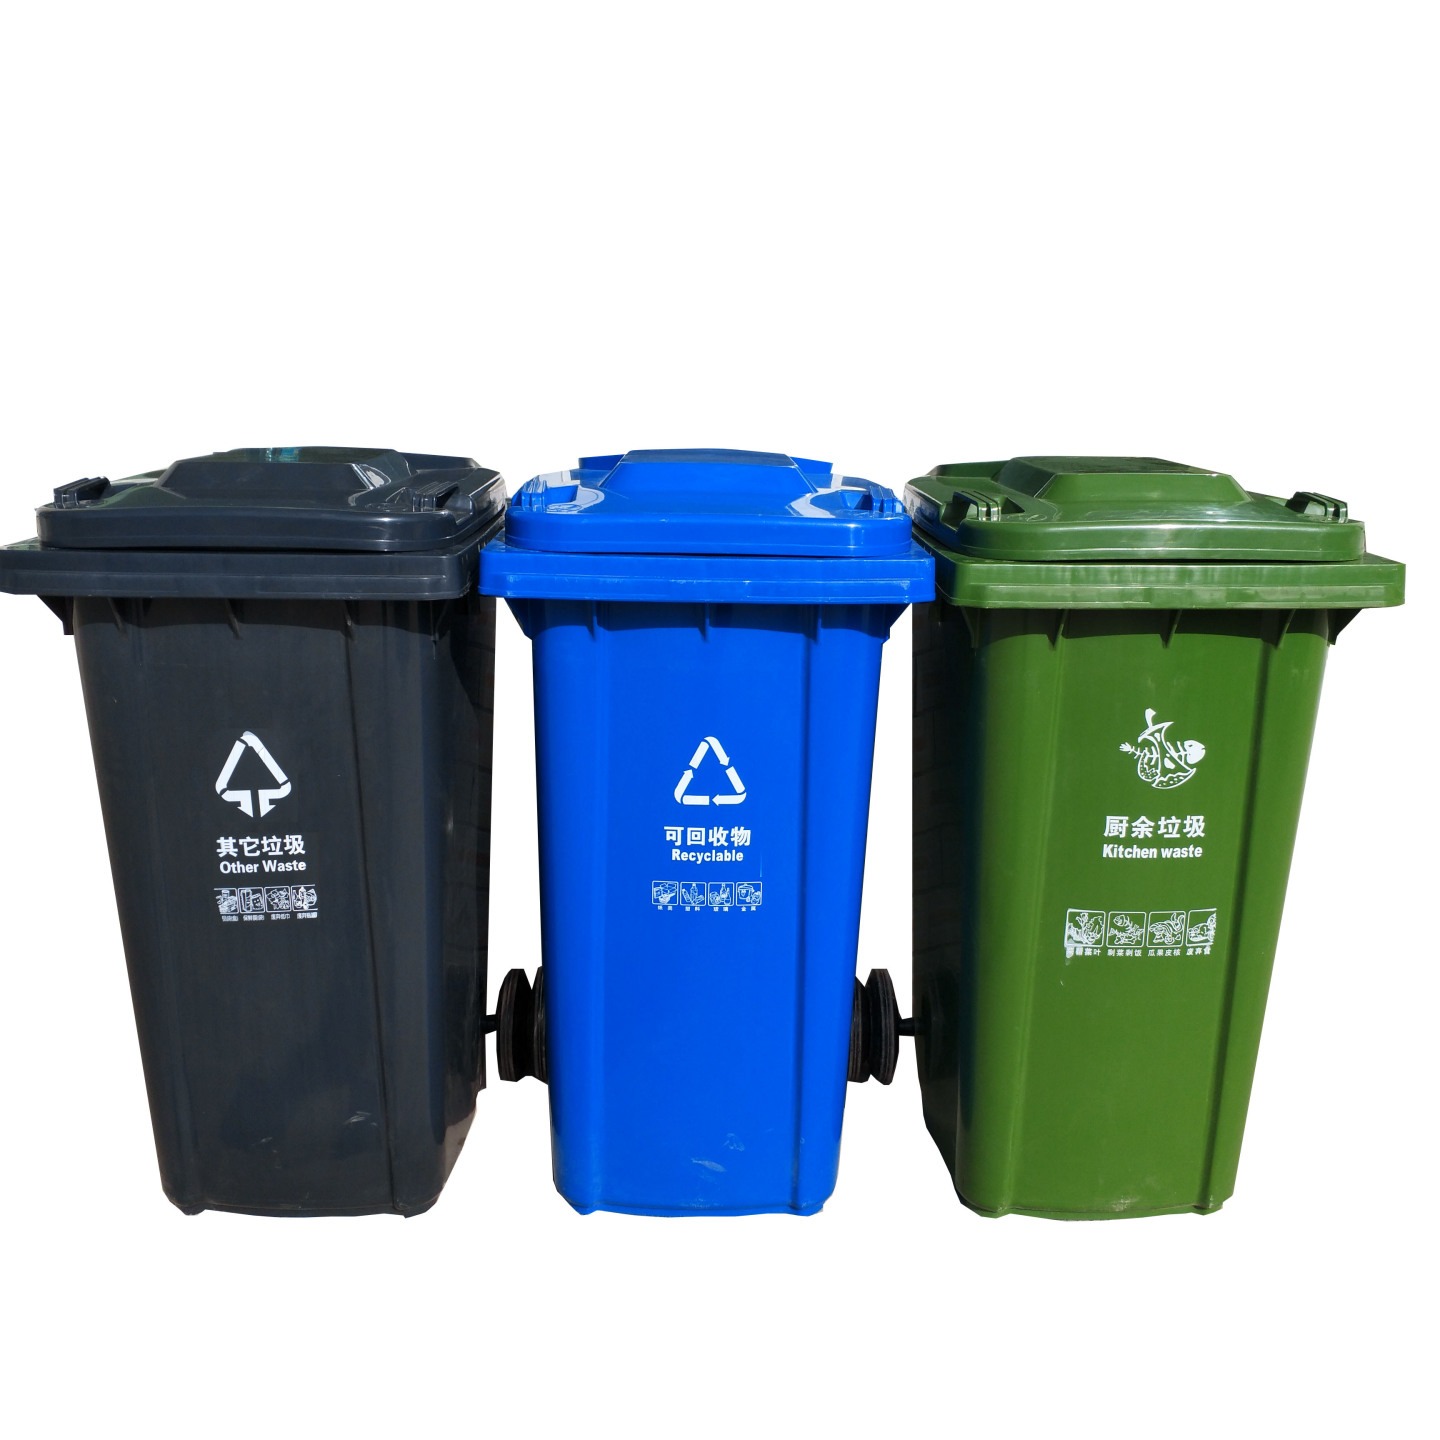 垃圾桶分类 可回收垃圾桶 不可回收垃圾桶 瑞名达干垃圾桶 挂车垃圾桶 铁制垃圾桶 4分类垃圾桶 多种可选图片